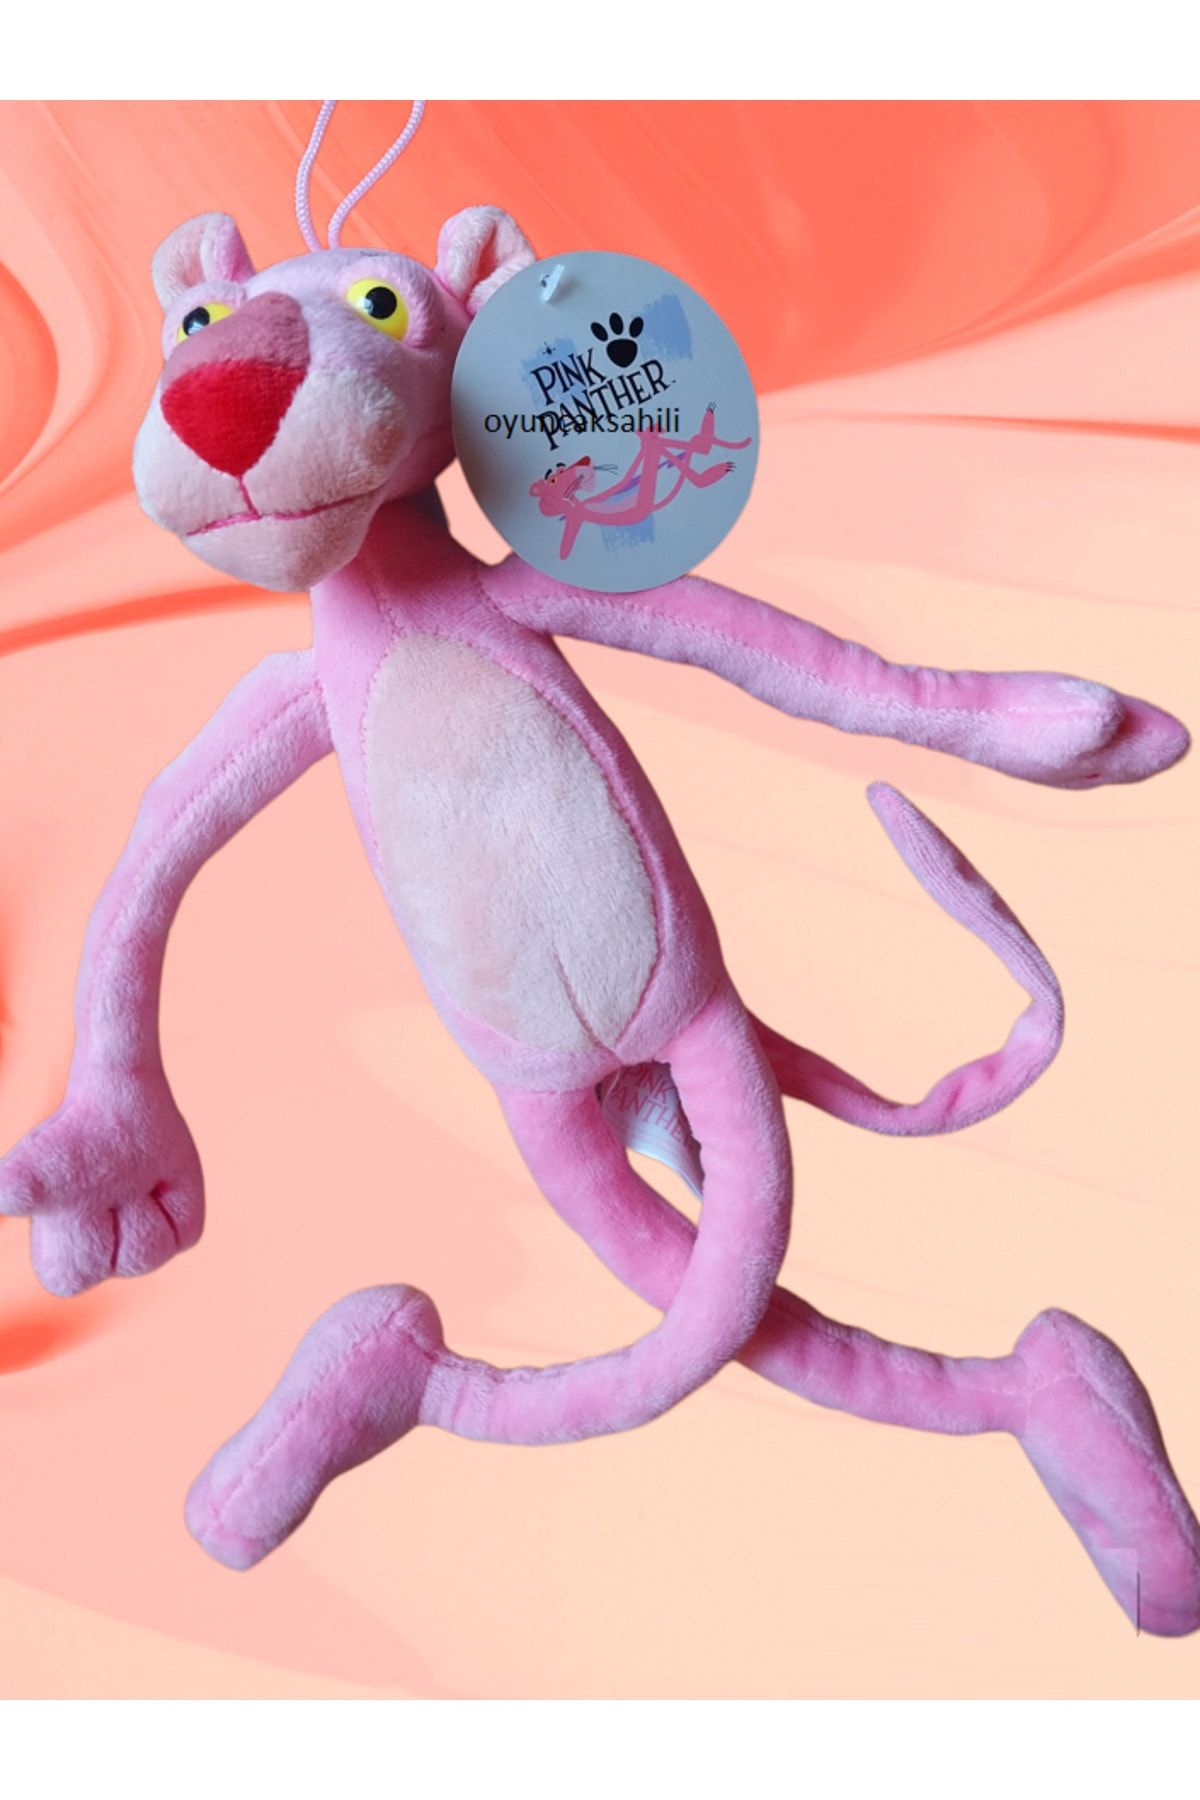 OYUNCAKSAHİLİ Pembe Panter Peluş Gerçek Pink Panther Tam 40cm Orjinal Lisanslı Oyuncak